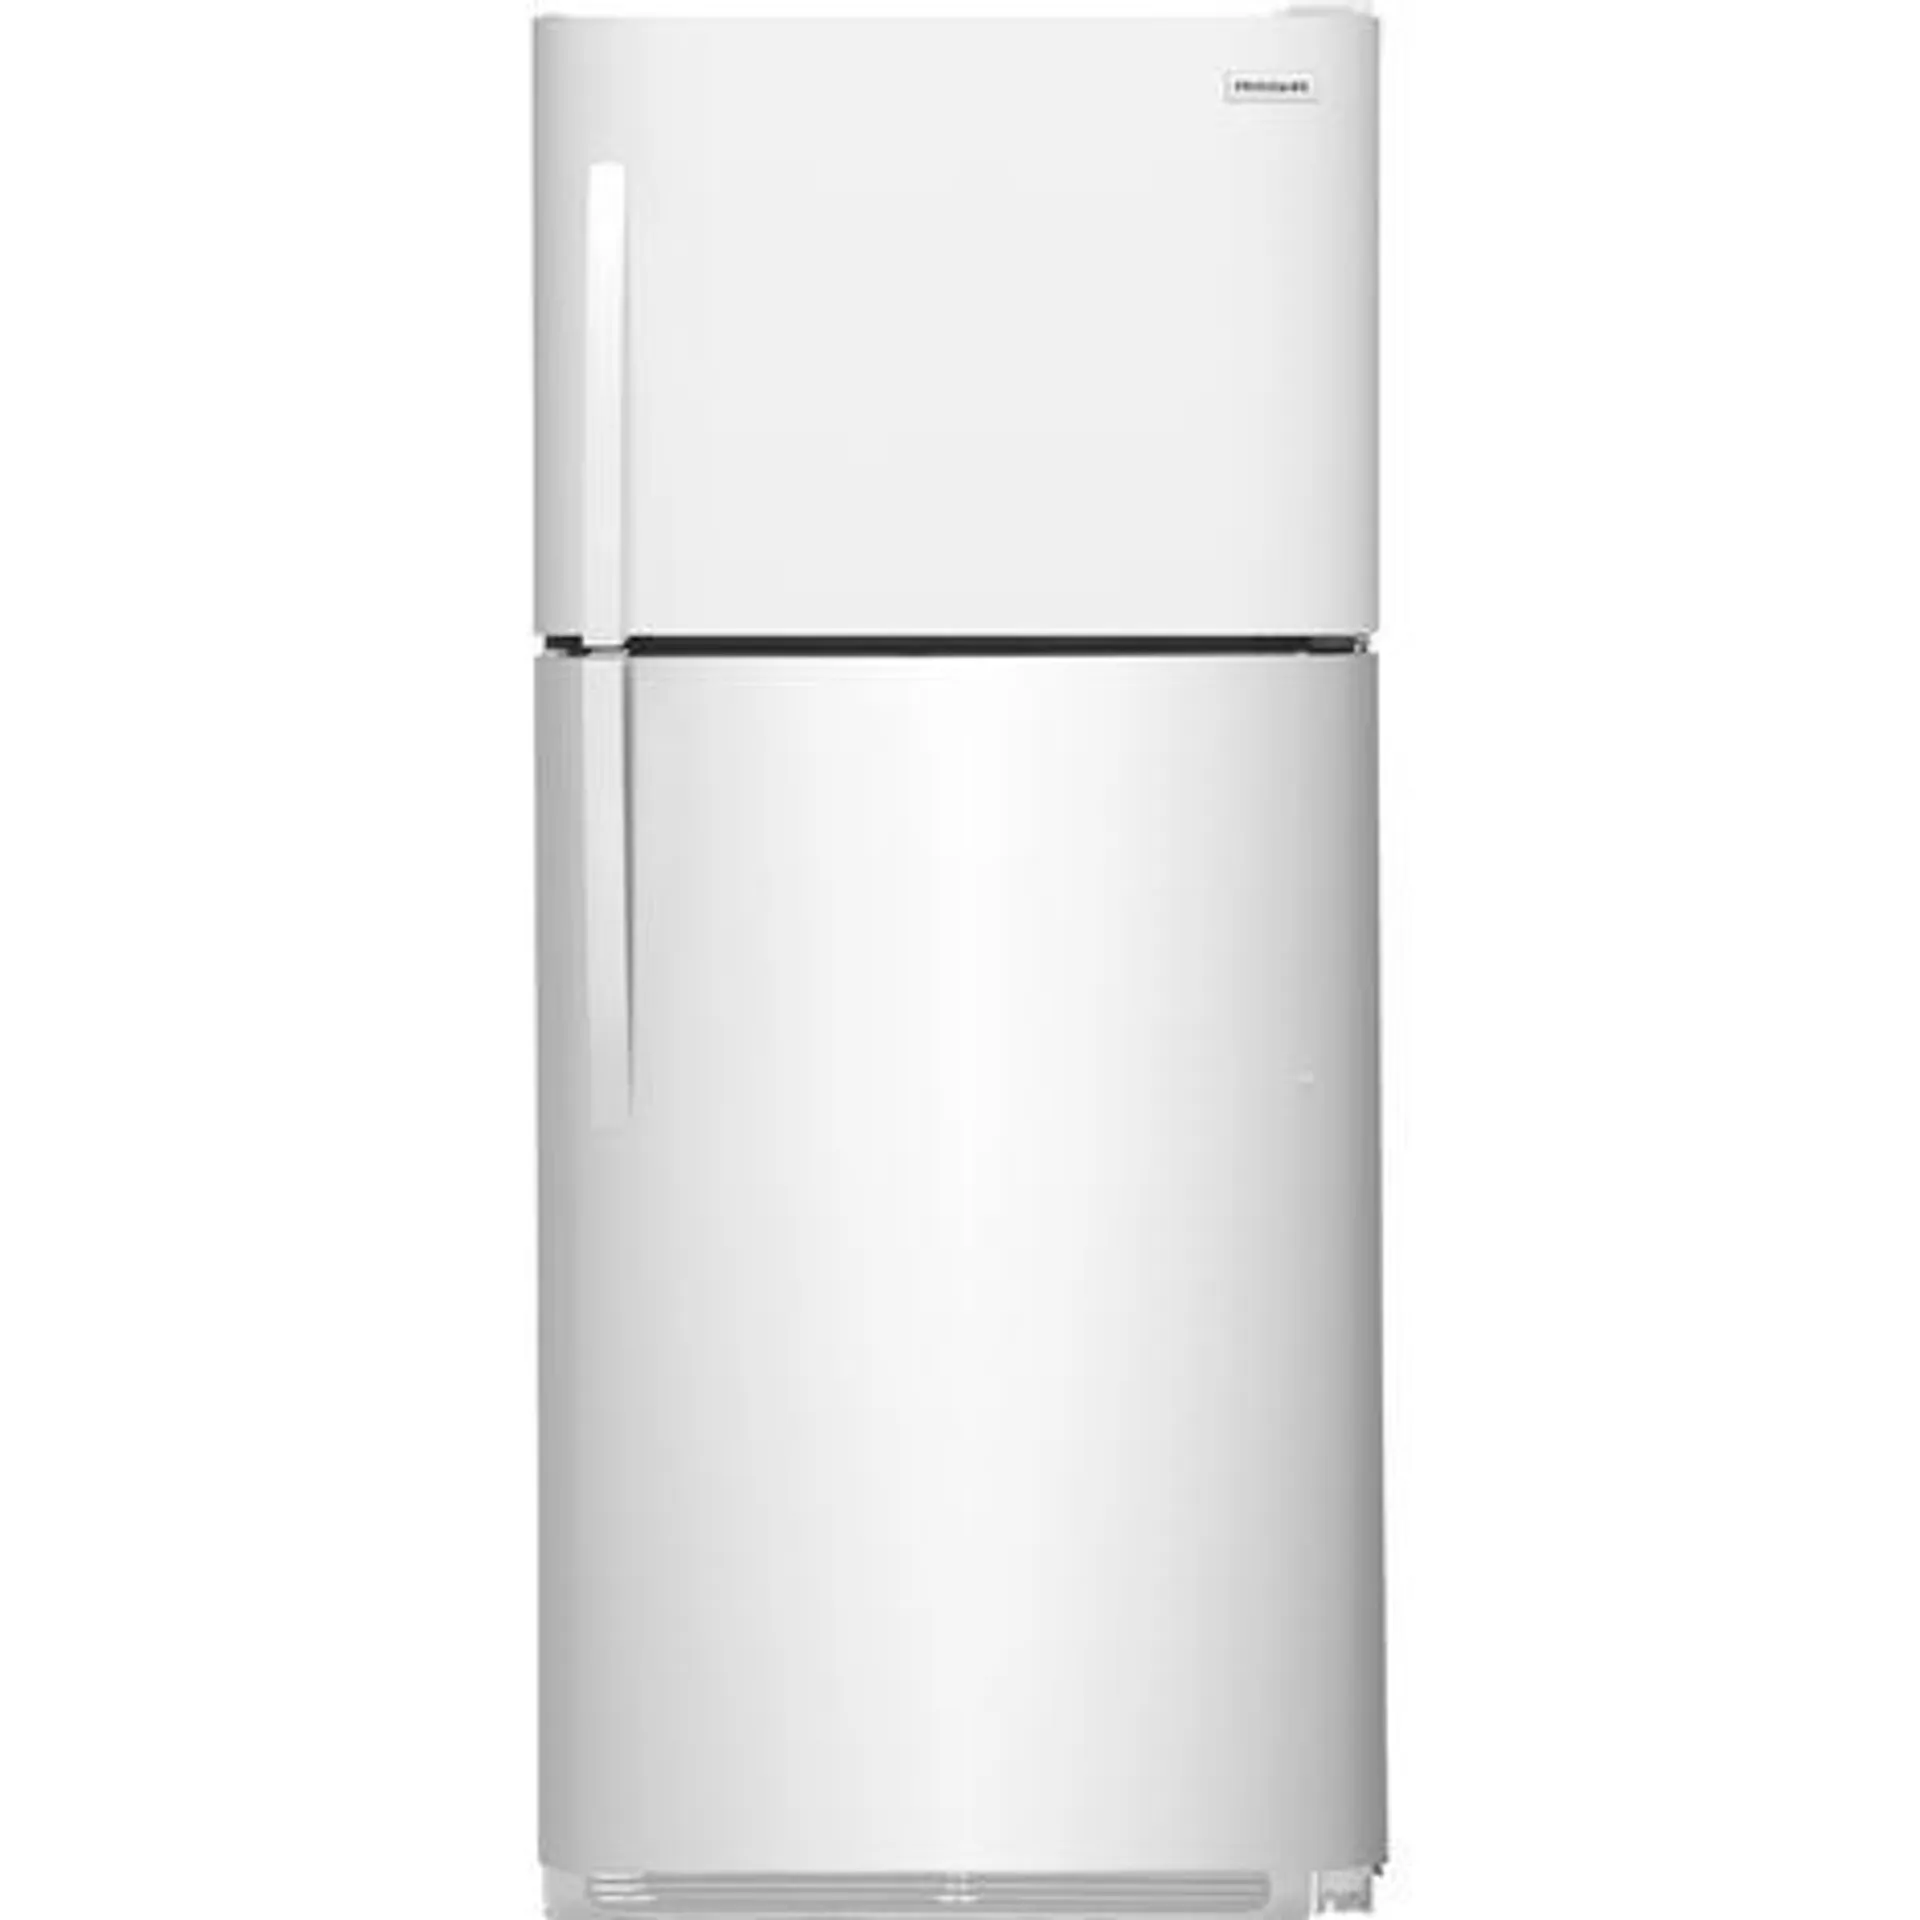 Frigidaire FRTD2021AW 20.5 cu. ft. Top Freezer Refrigerator – White